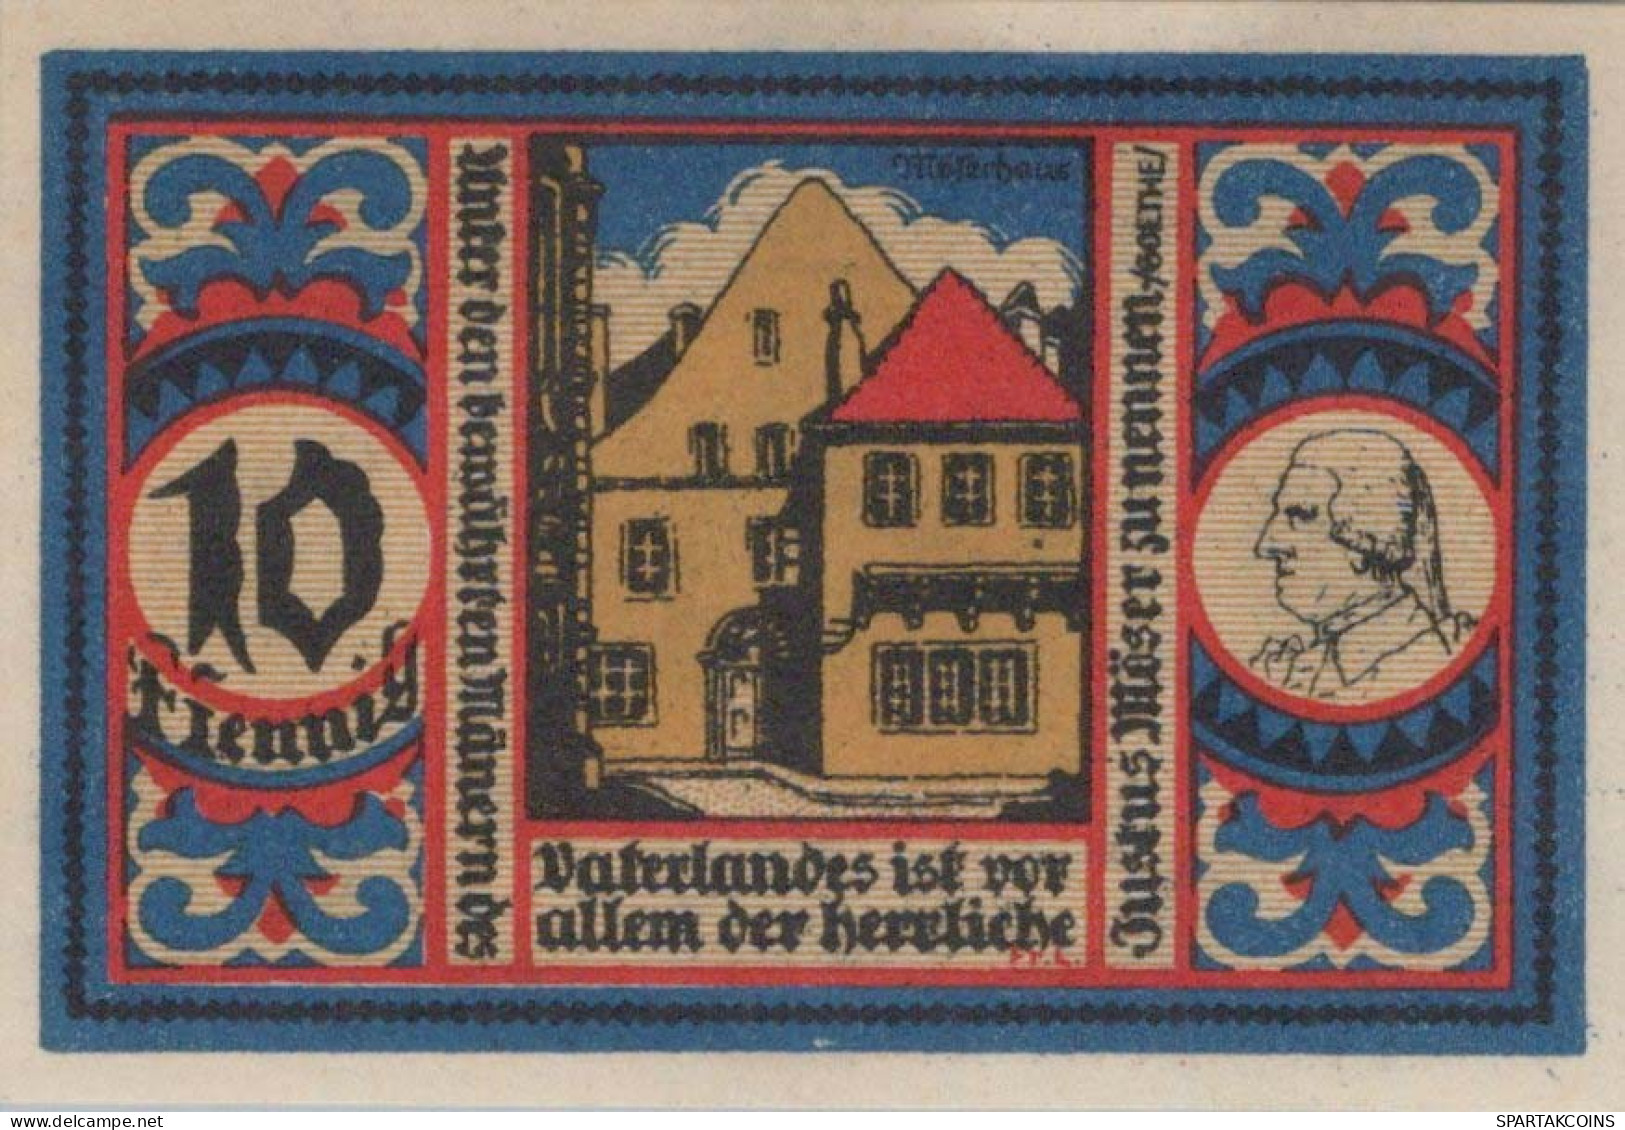 10 PFENNIG 1921 Stadt OSNABRÜCK Hanover DEUTSCHLAND Notgeld Banknote #PF721 - [11] Local Banknote Issues